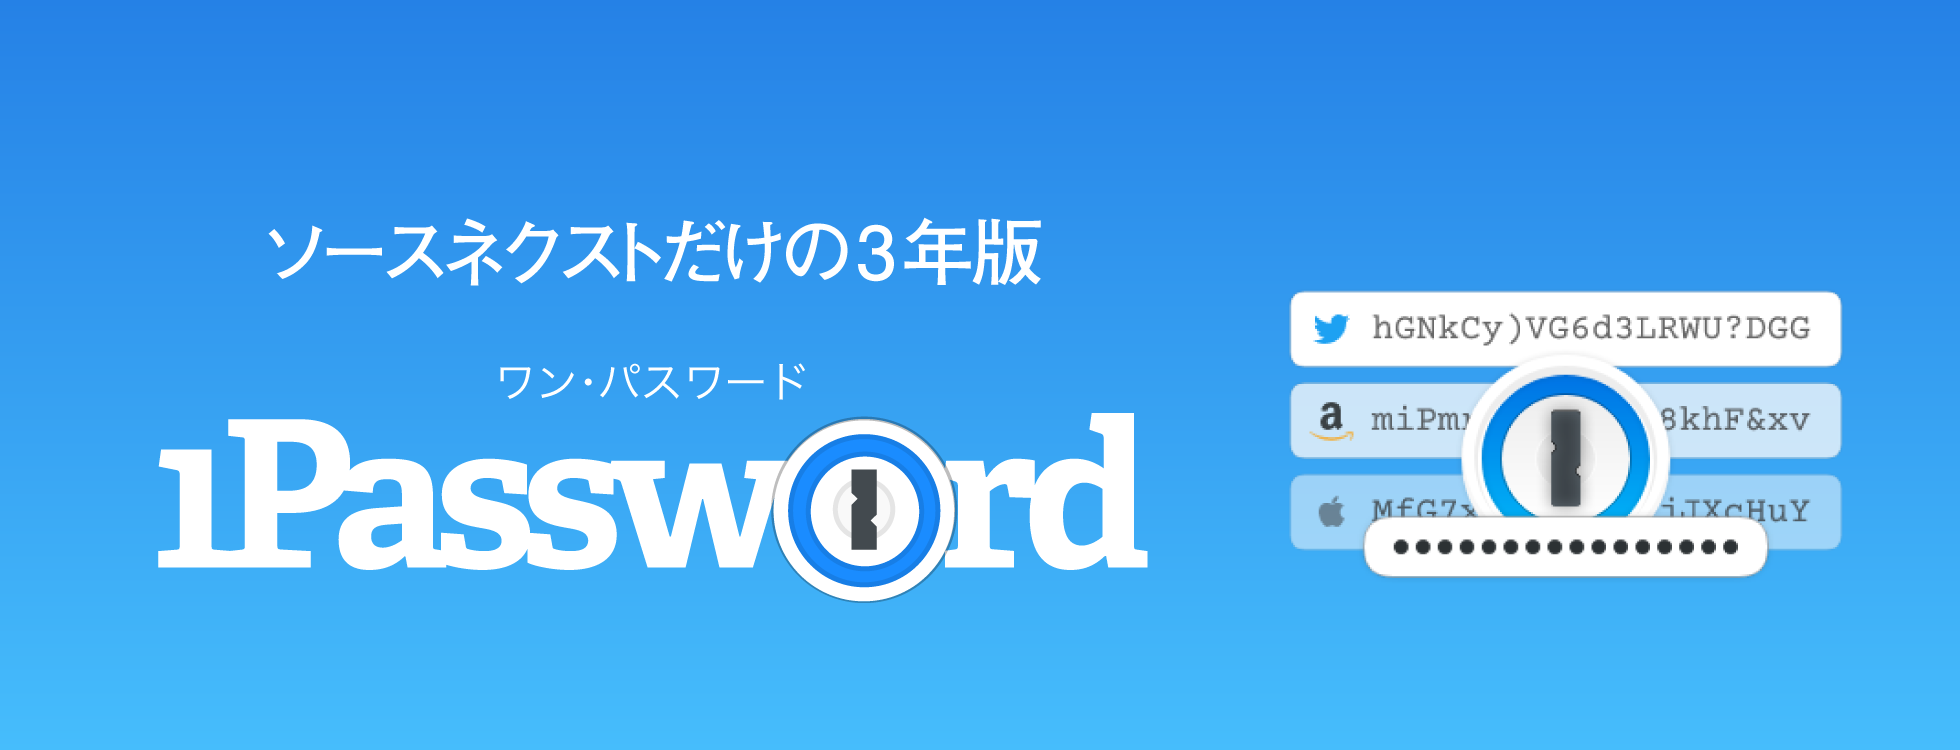 1Password 3年版 - パスワード管理サービス